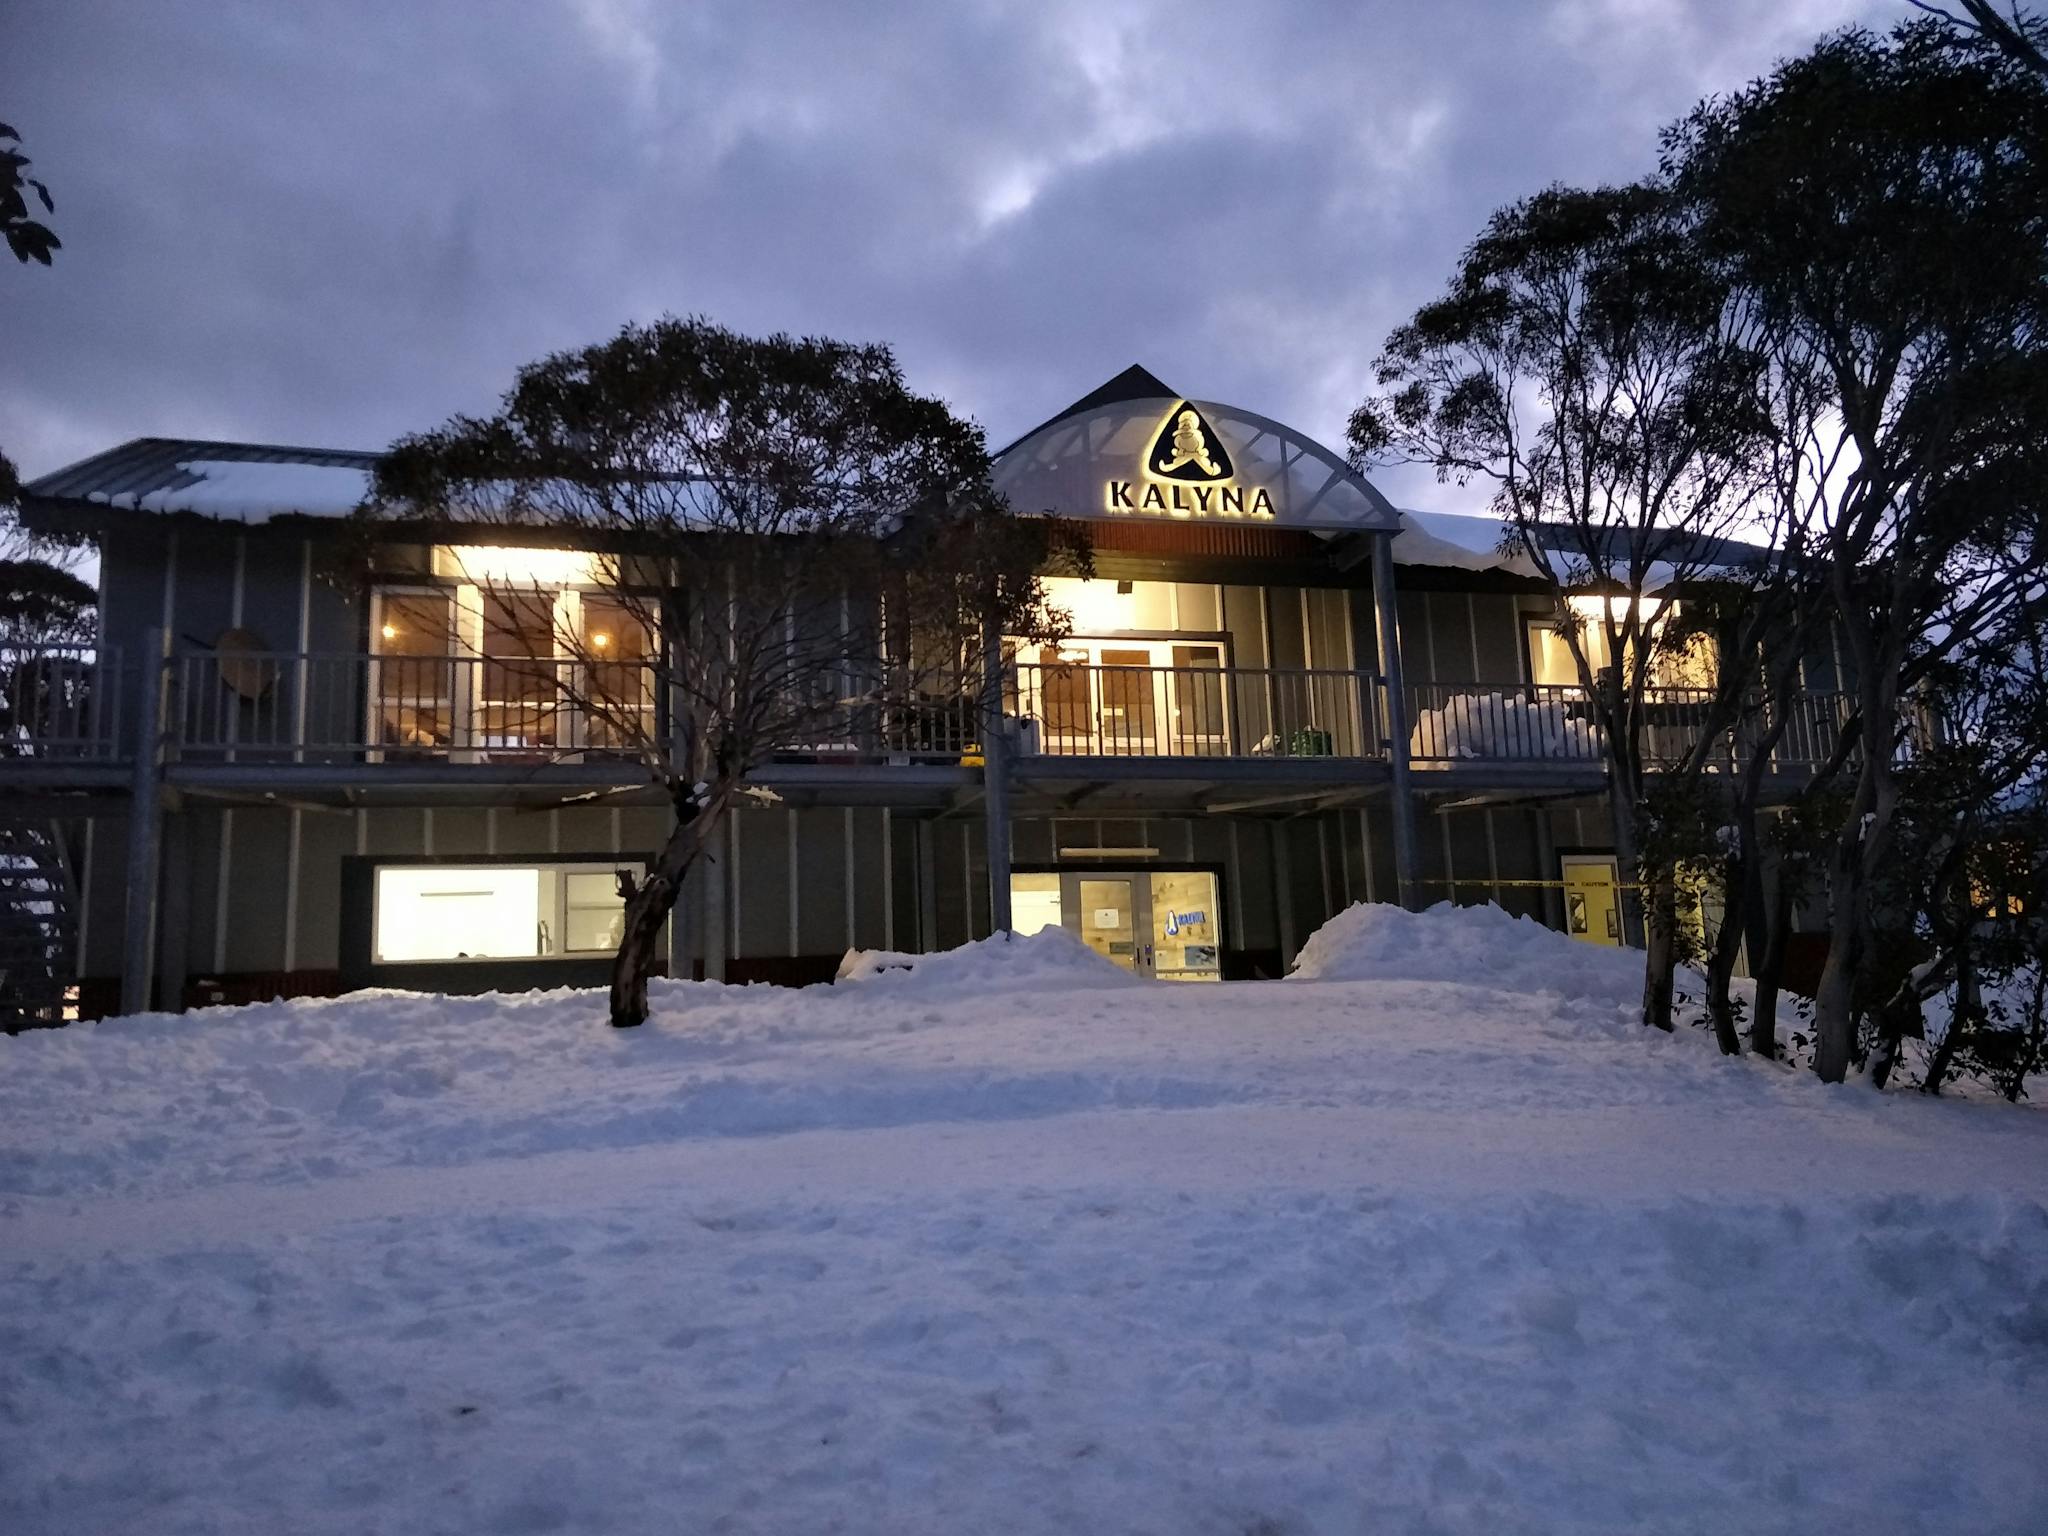 Kalyna Ski Club - Mount Hotham